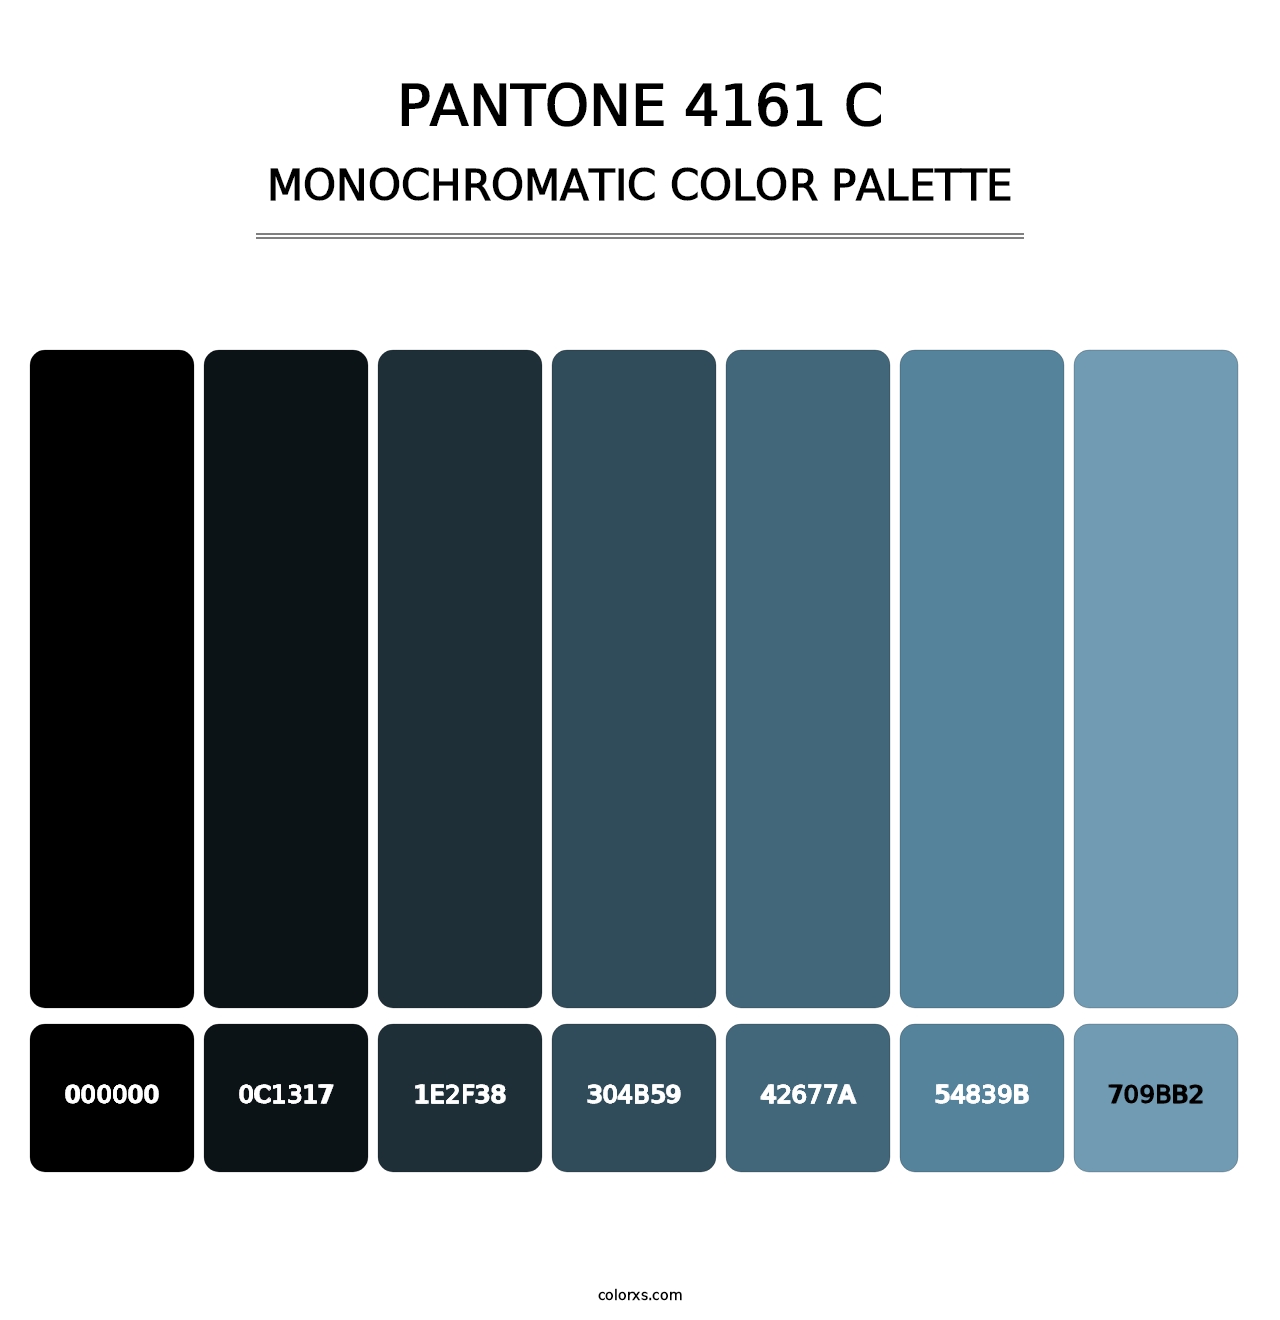 PANTONE 4161 C - Monochromatic Color Palette